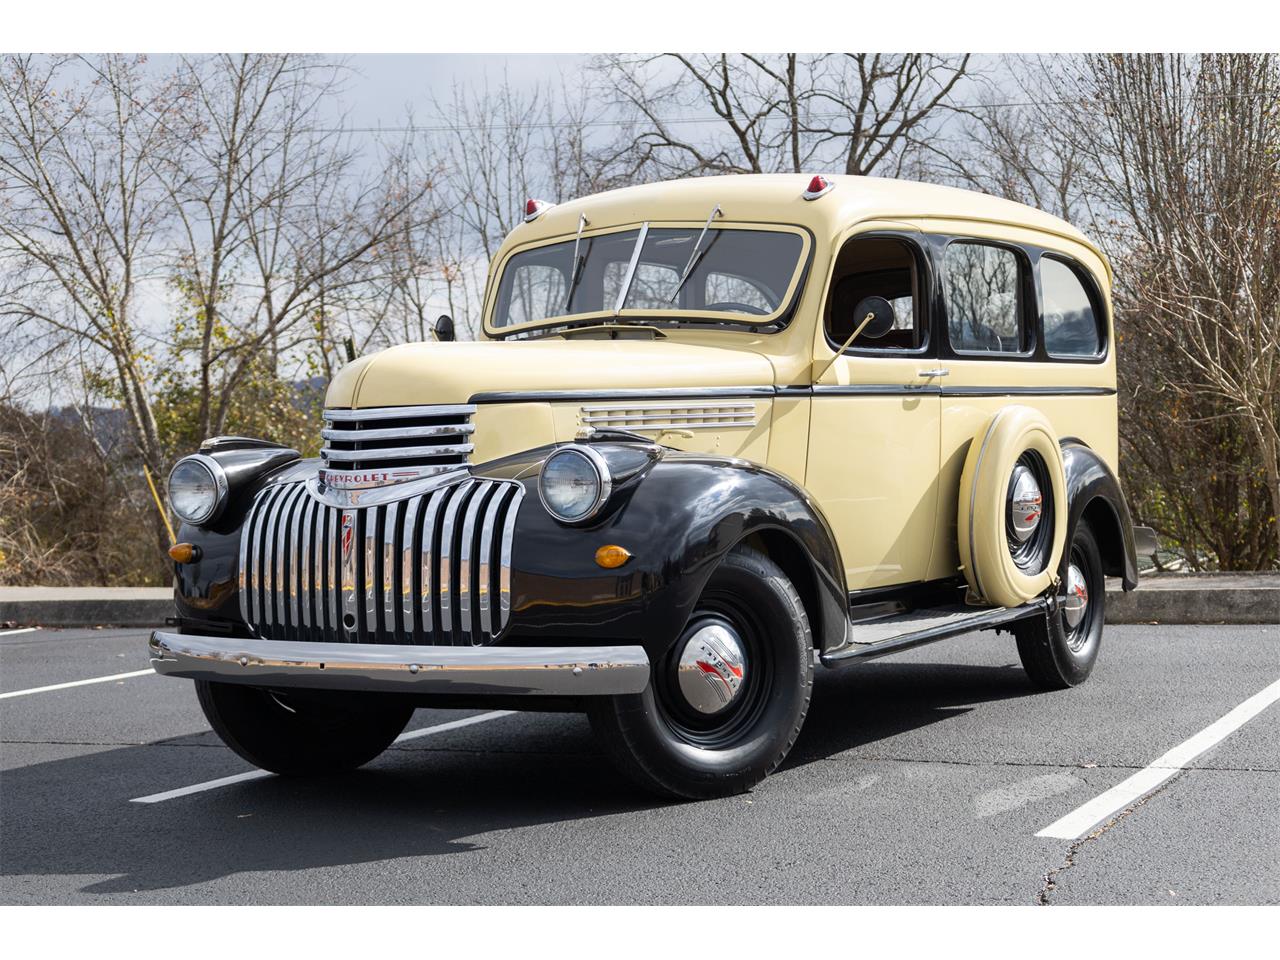 For Sale: 1941 Chevrolet Suburban in Jacksboro, Tennessee for sale in Jacksboro, TN